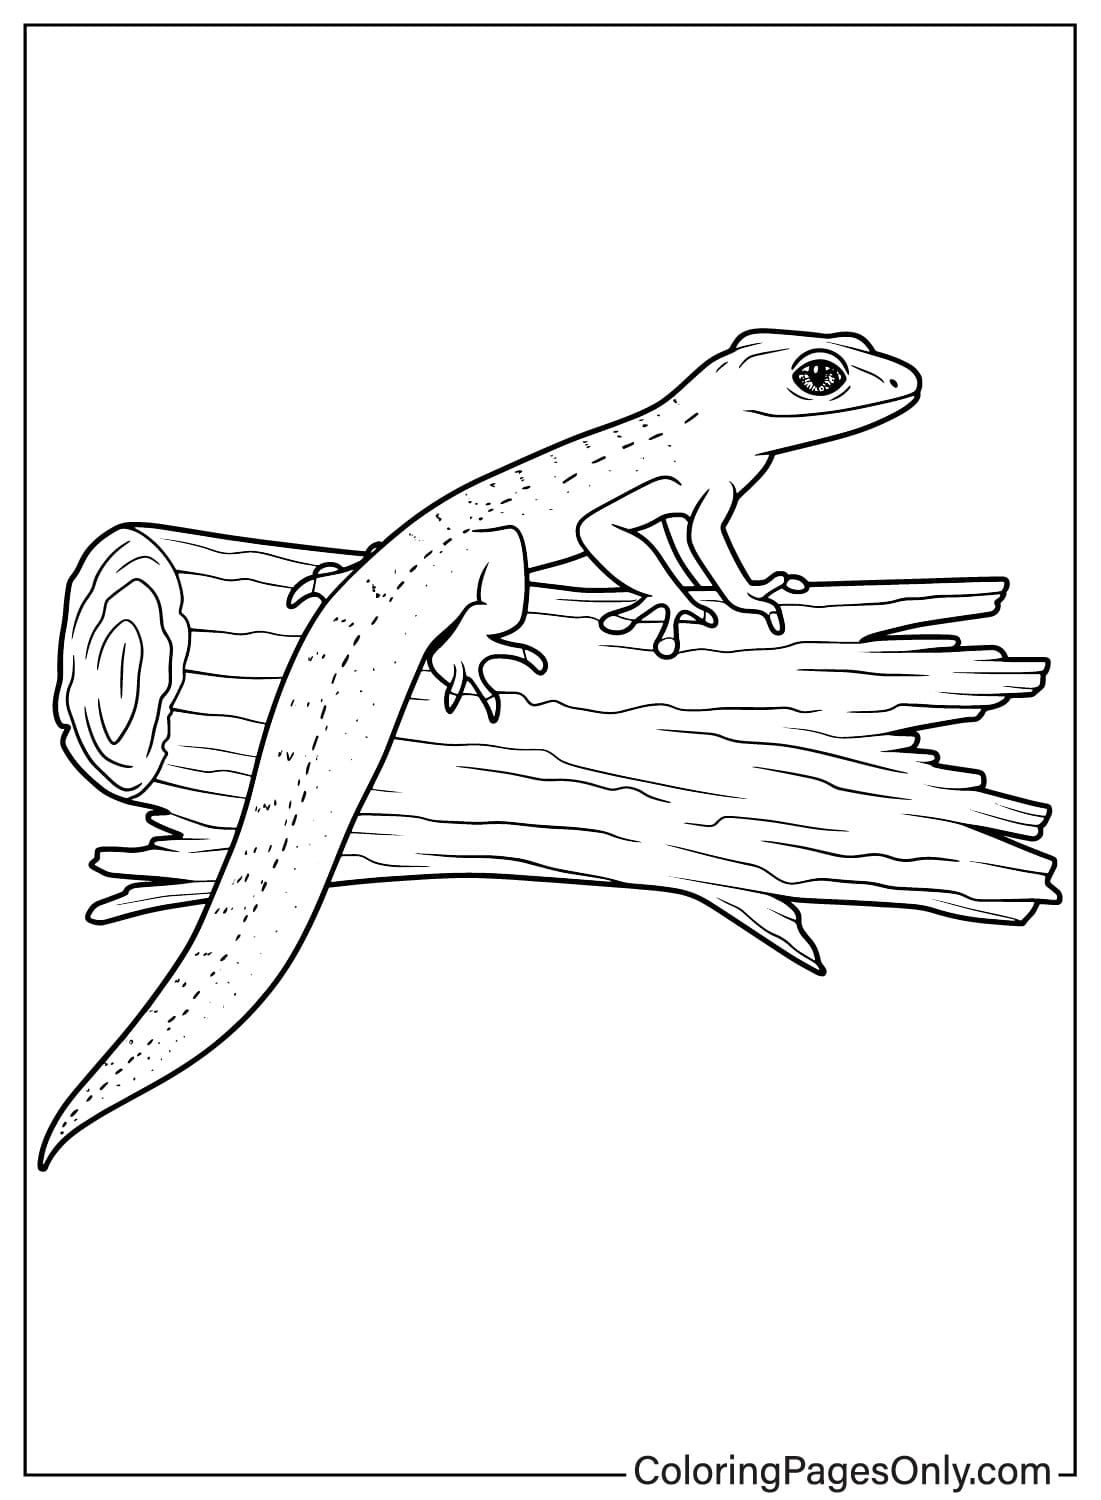 Página para colorear de lagarto imprimible de Lagarto